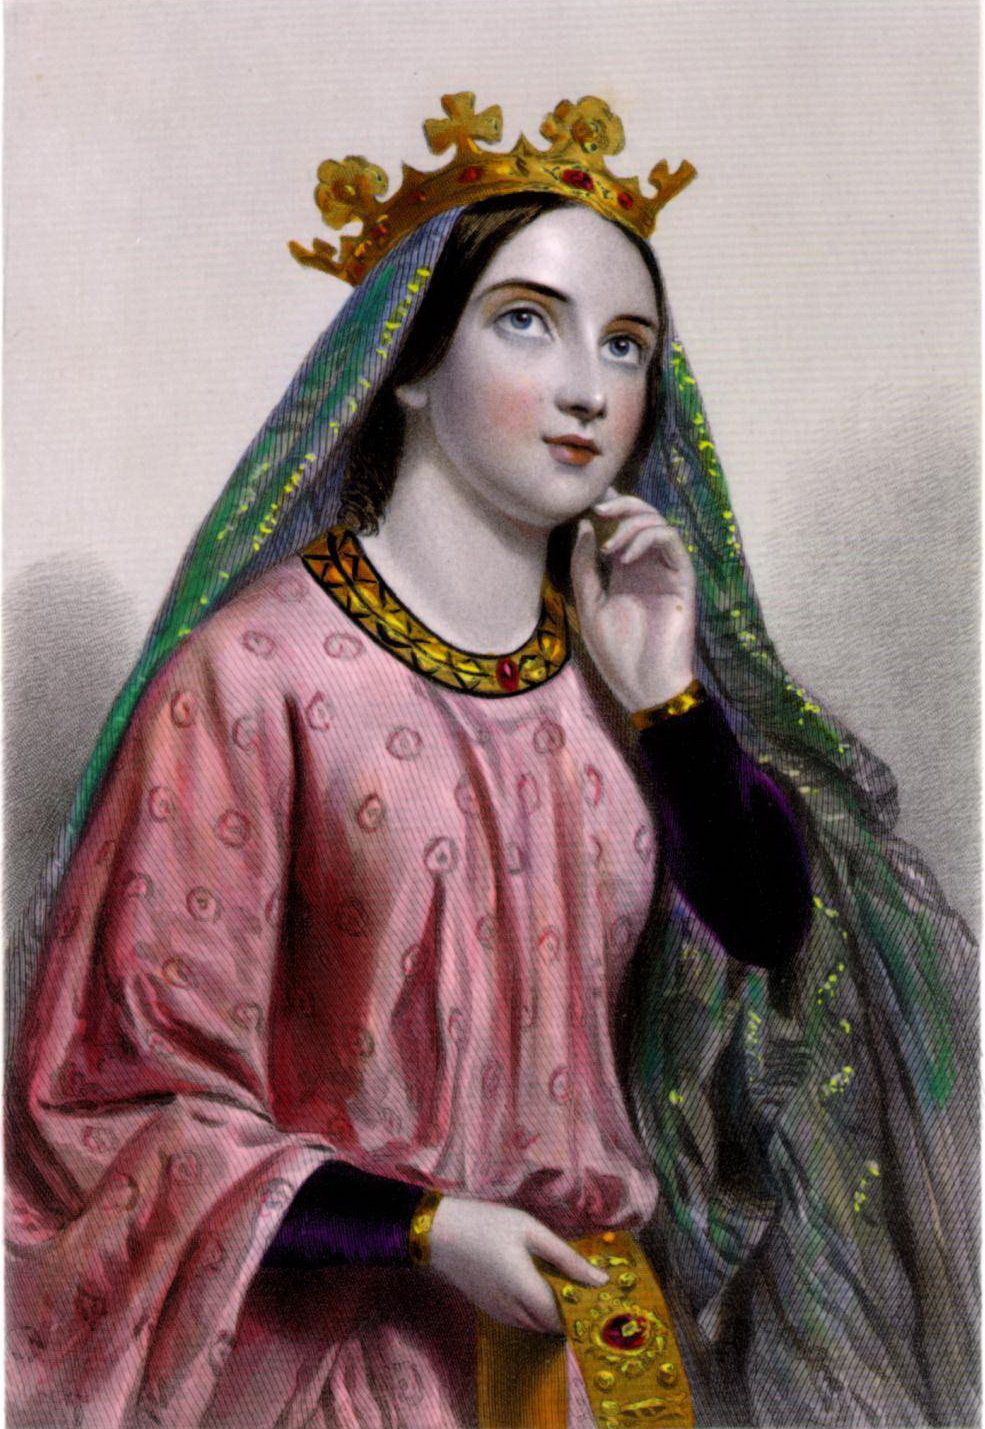 Princess Berengaria of Navarre